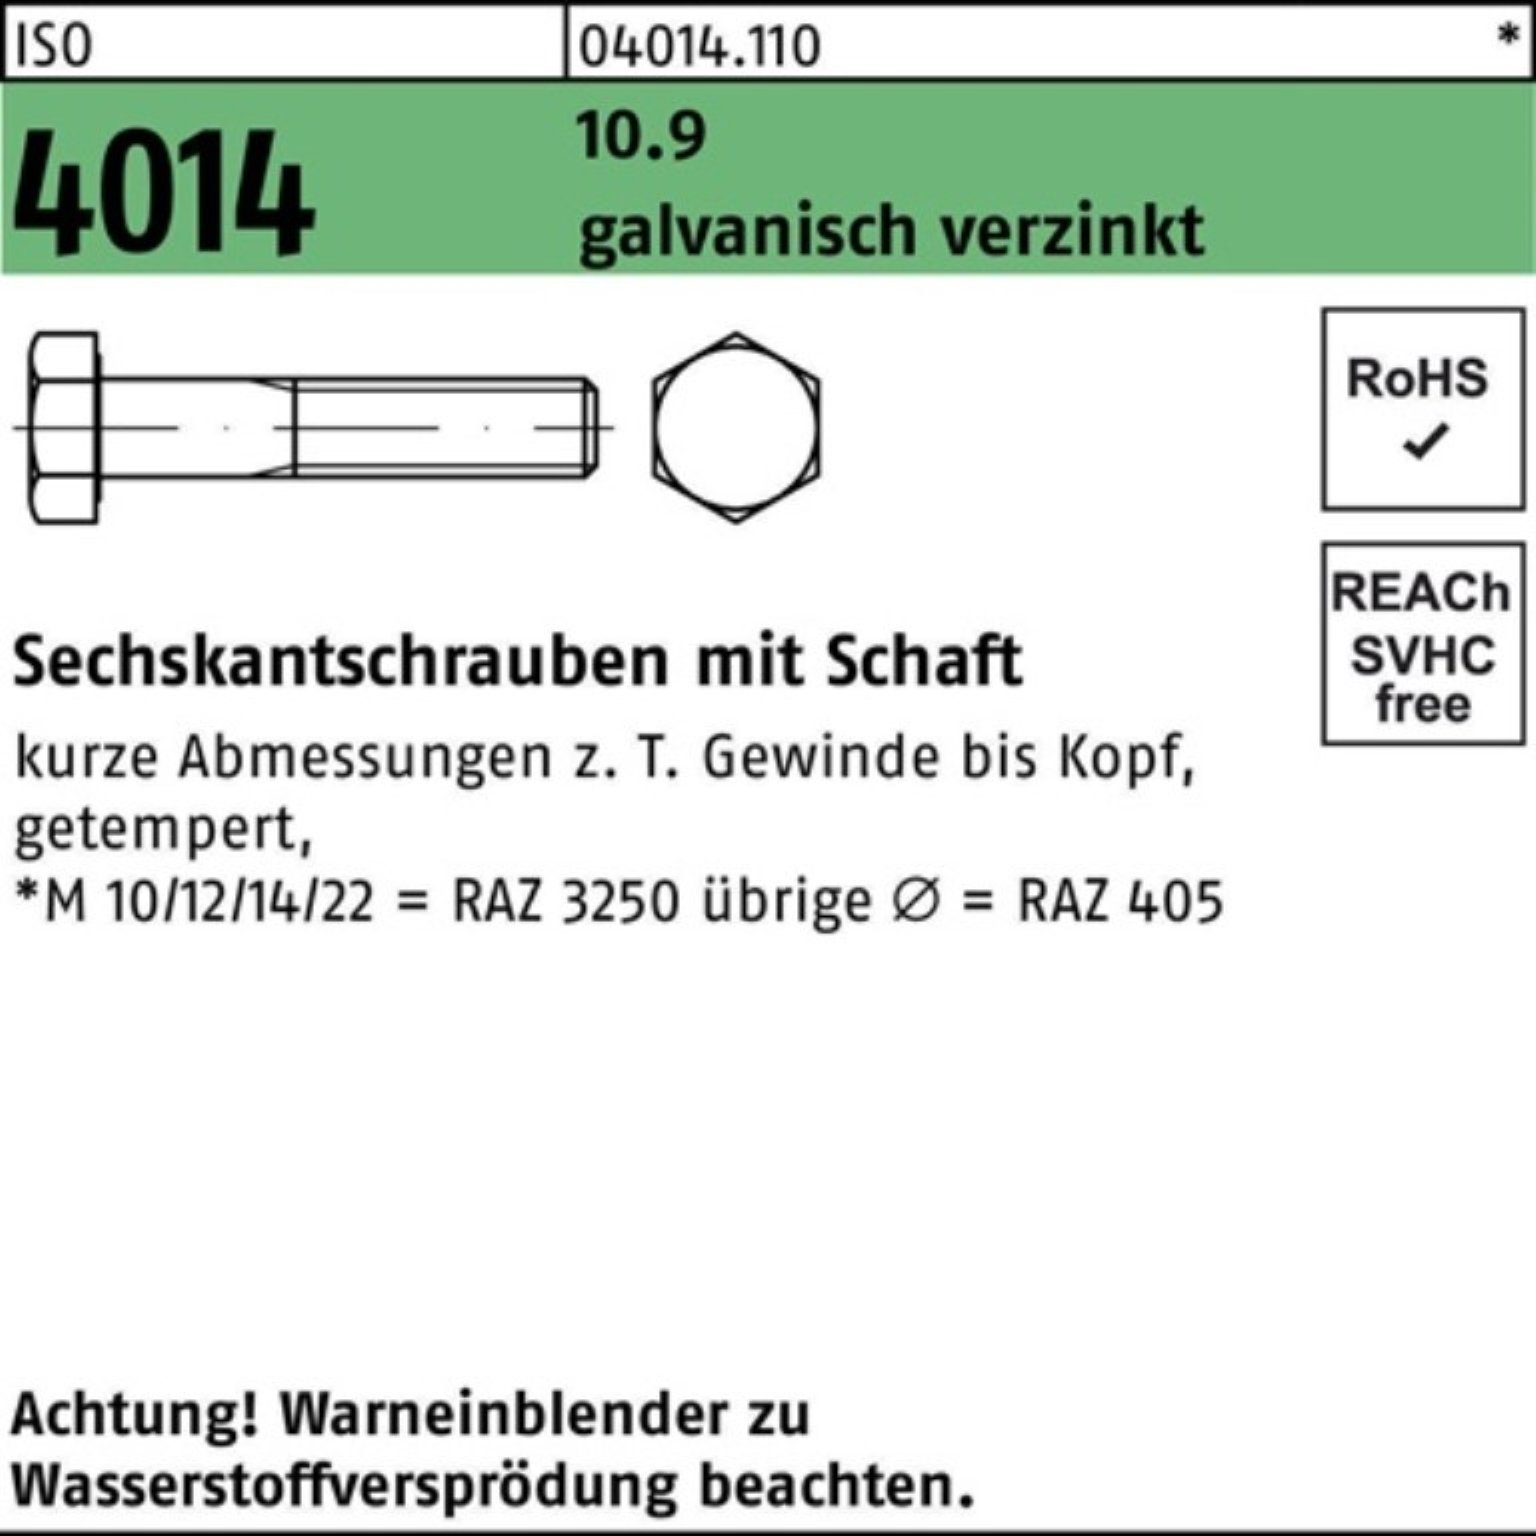 Sechskantschraube 100er Schaft 55 Bufab Pack 4014 5 M16x 10.9 Sechskantschraube ISO galv.verz.